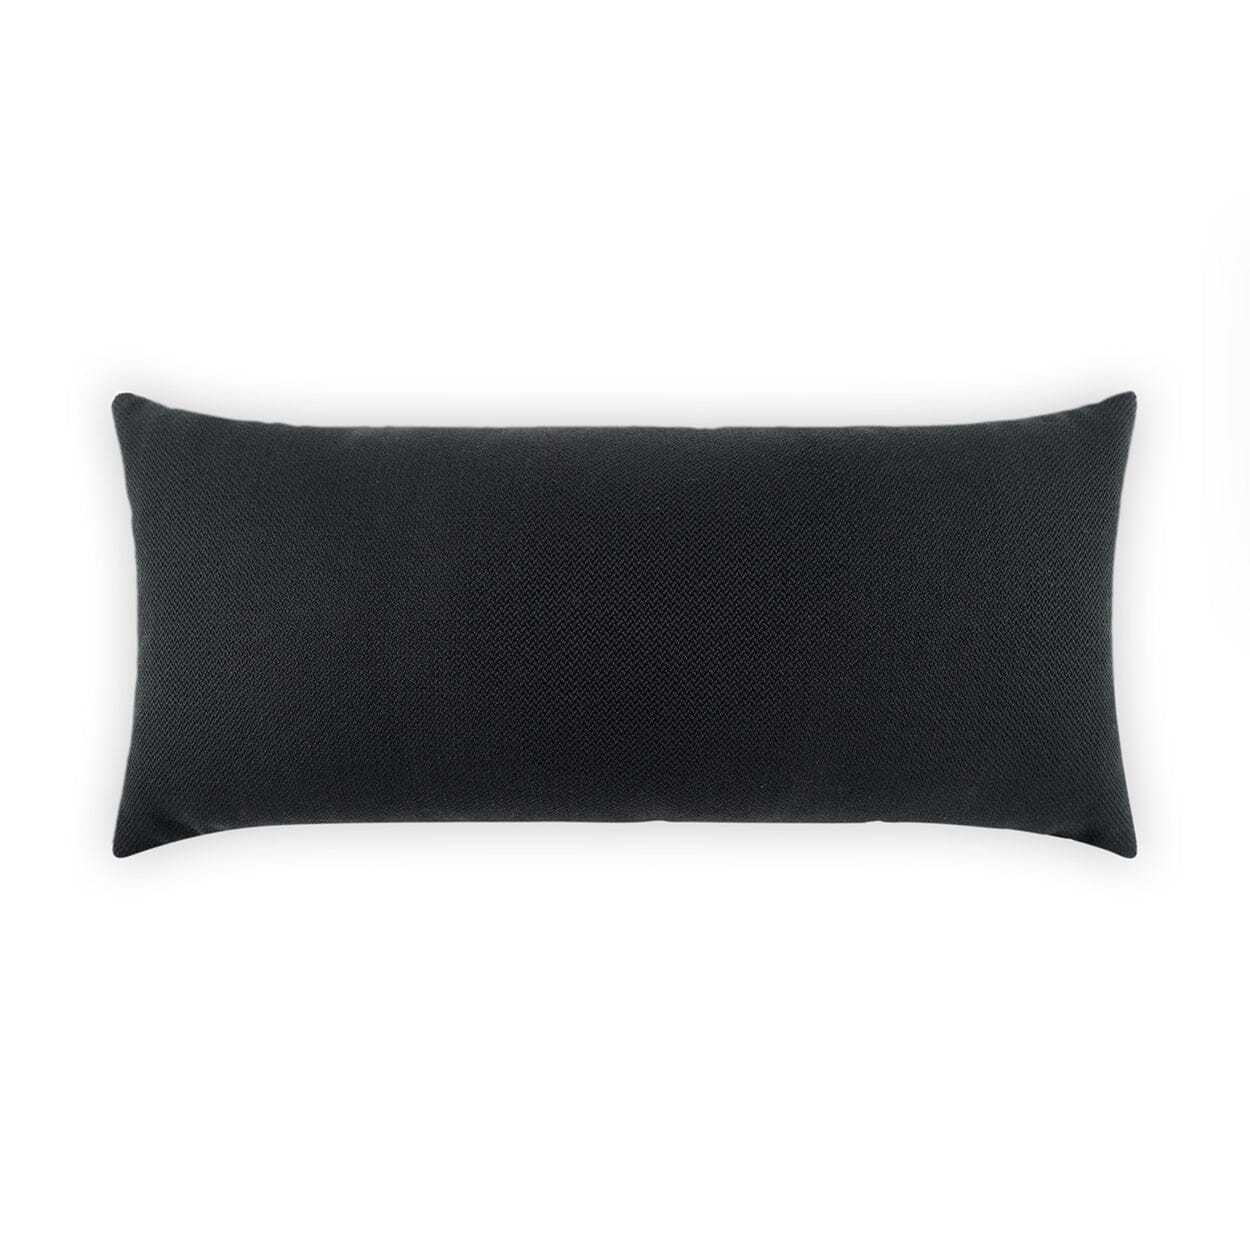 D.V. Kap 12" x 24" Outdoor Lumbar Pillow | Pyke Ebony Lumbar Pillows D.V Kap Outdoor